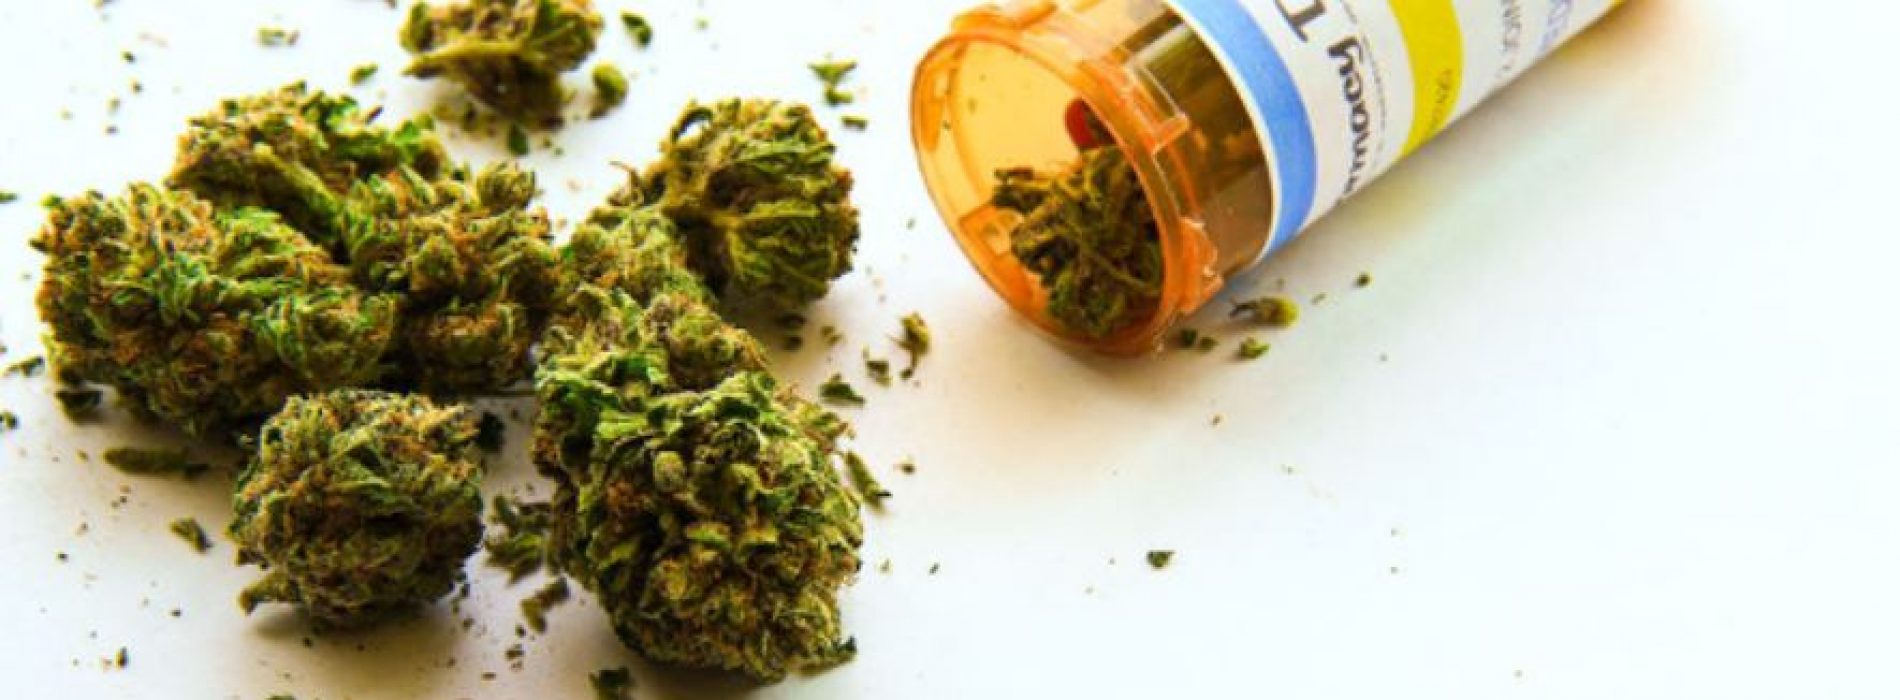 Volgens onderzoek is medicinale cannabis superieur aan opioïden bij chronische pijn